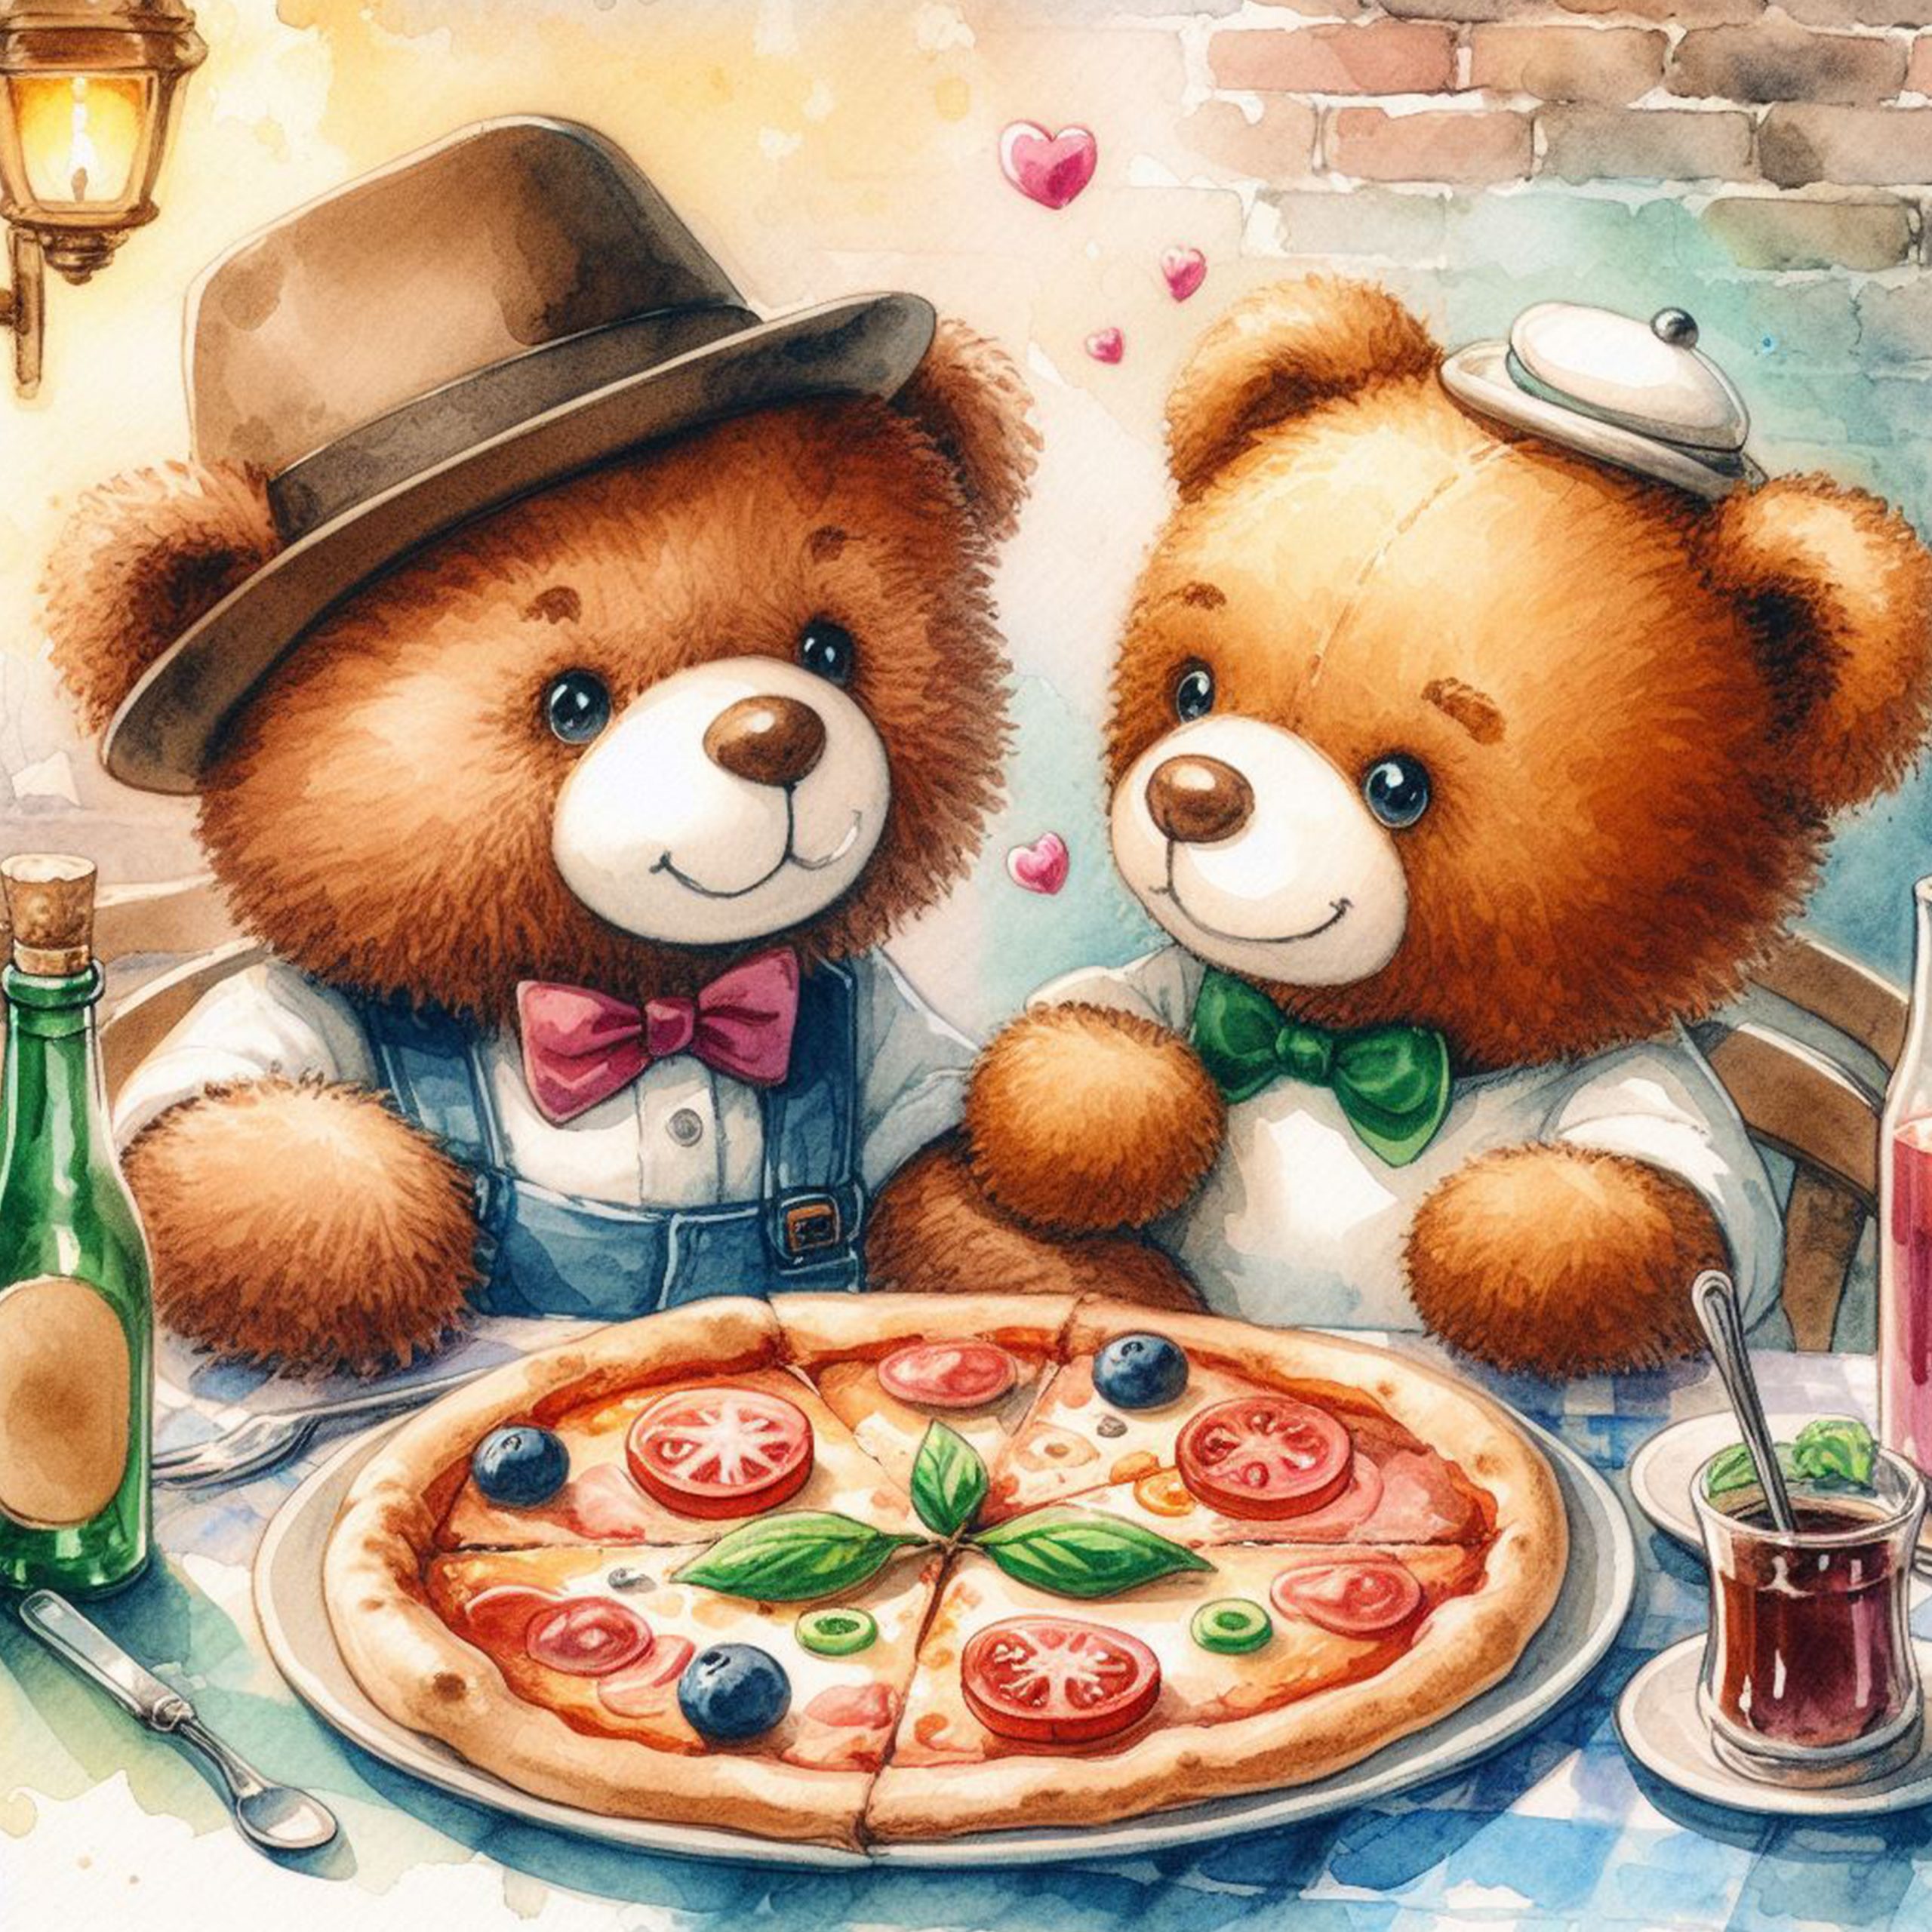 Pareja de osos Teddy comiendo pizza